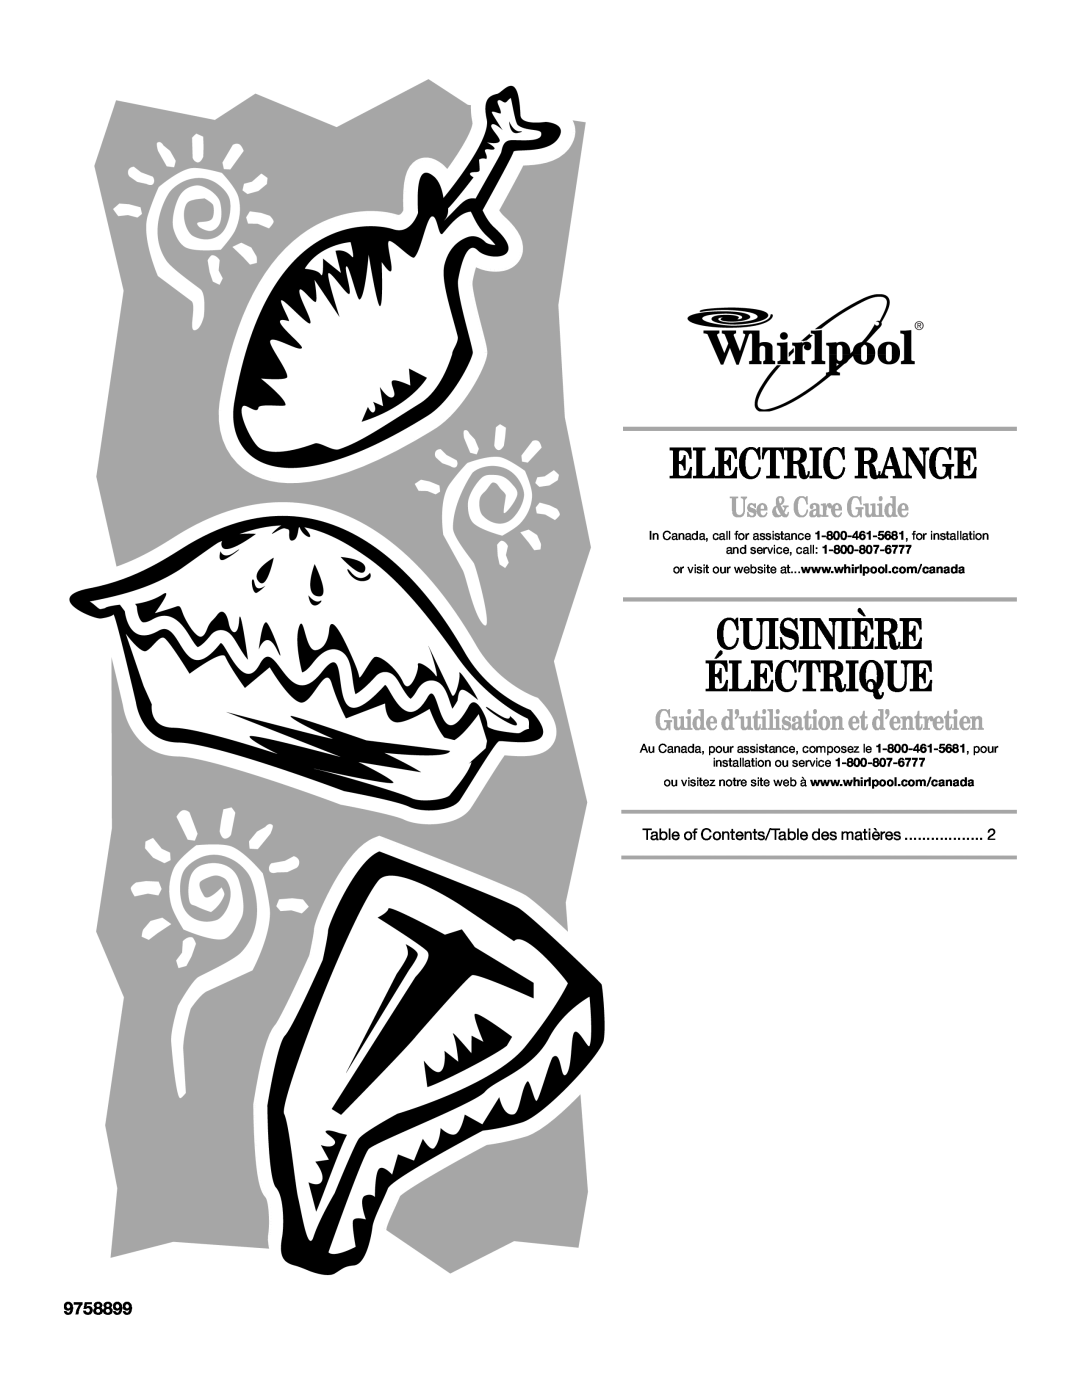 Whirlpool 9758899 manual Use & Care Guide, Guide d’utilisation etd’entretien, Electric Range, Cuisinière Électrique 